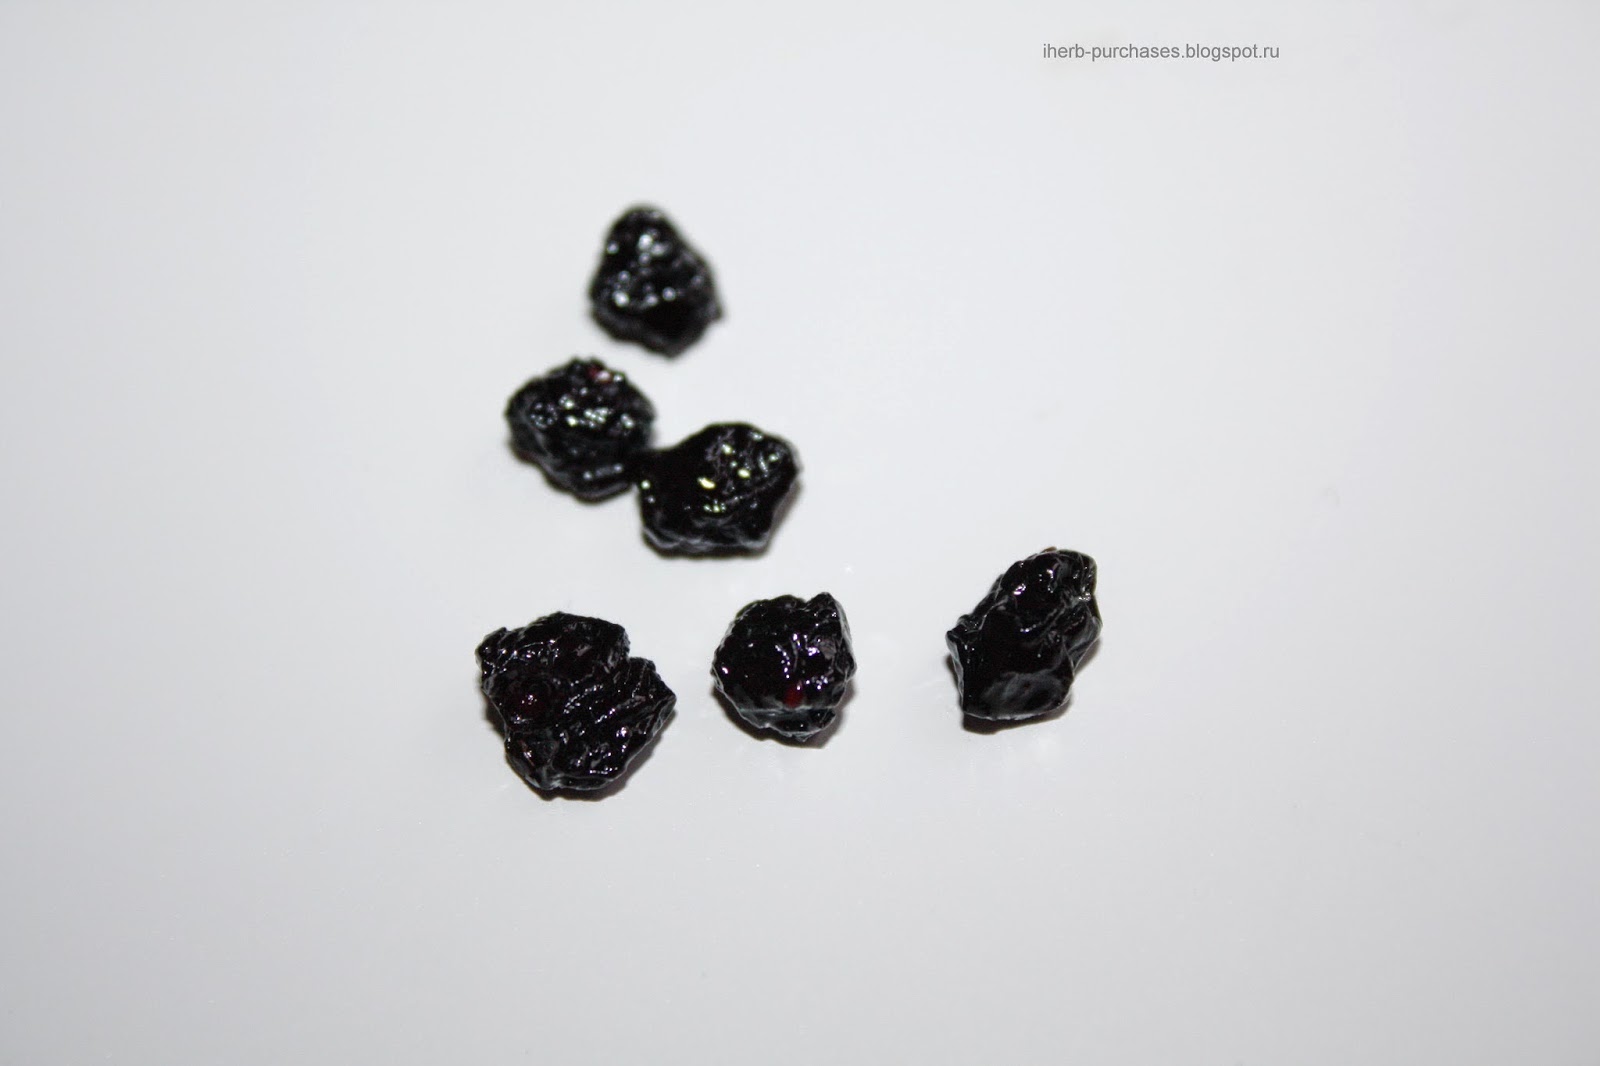 Eden Foods, Organic, Dried Blueberries, 4 oz (113 g)